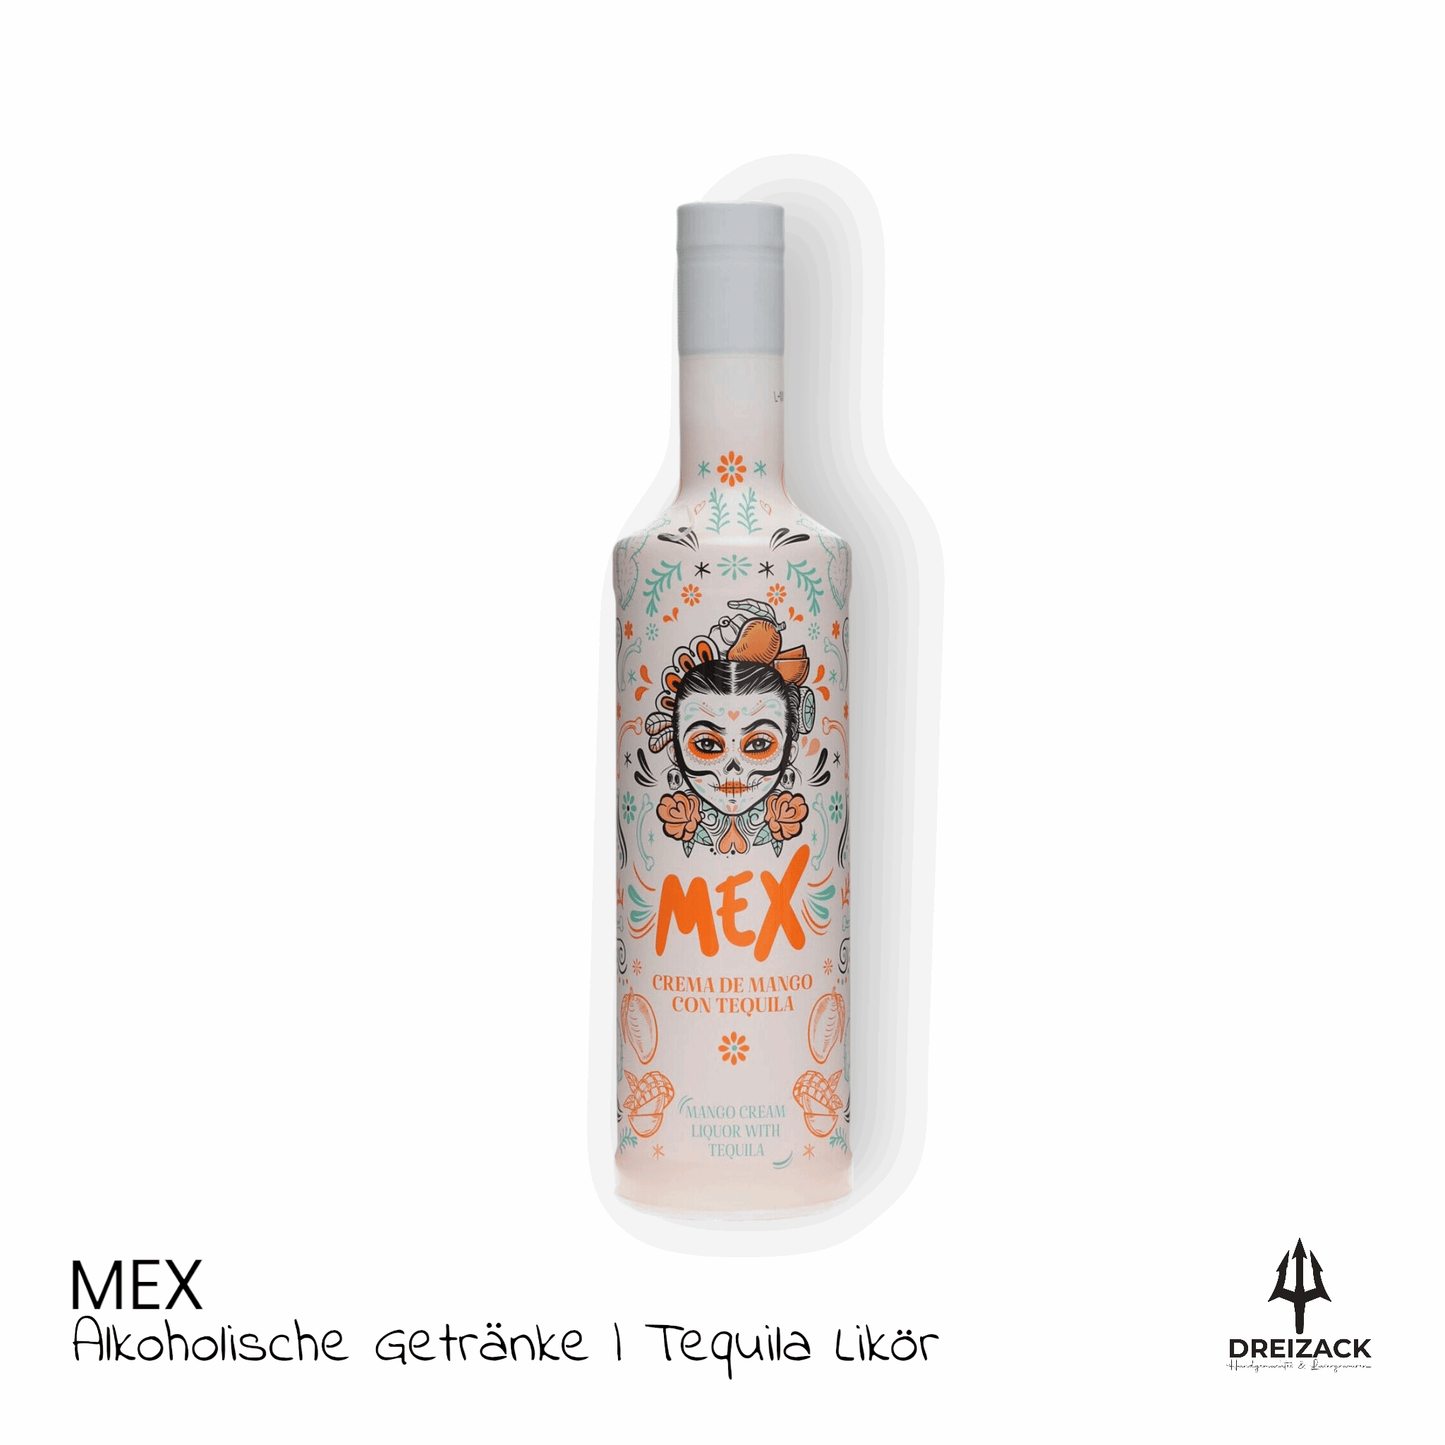 MEX Mango - Mangocreme mit Tequila Alkoholische Getränke Dreizack oesterreich handgemachte geschenke in wien